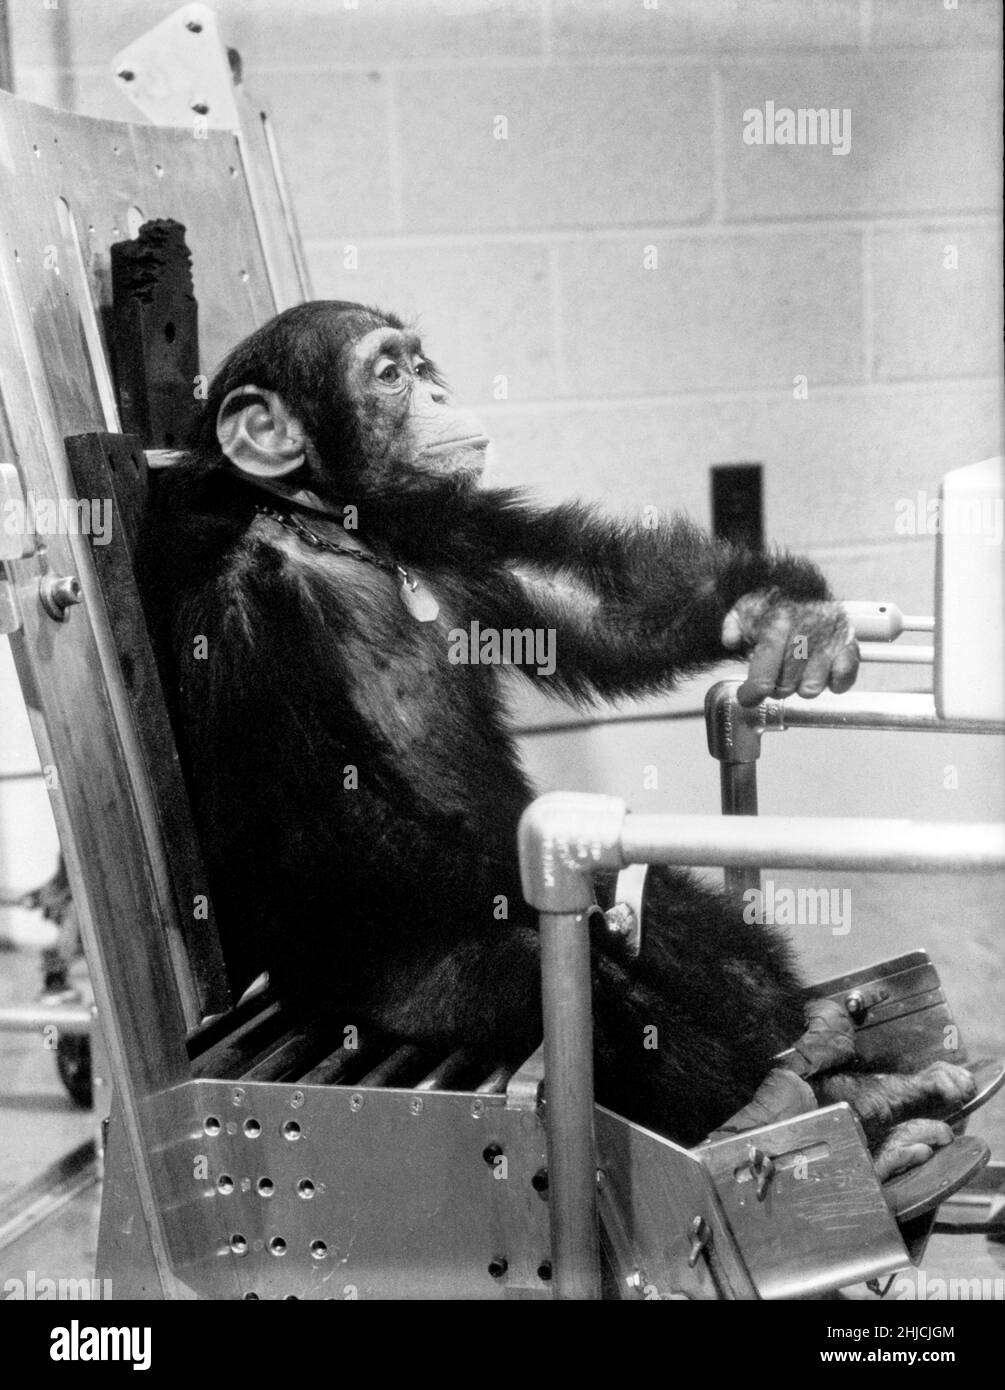 Schimpansen-Schinken während der Vorflugaktivität mit einem seiner Handler vor dem Mercury-Redstone 2 Testflug. Am 31. Januar 1961 brachte ein Mercury-Redstone-Start von Cape Canaveral den Schimpansen Ham in einer Bogenbahn, die einen Höhepunkt von 158 Meilen über der Erde erreichte, über 400 Meilen in die Höhe. Die Mission war erfolgreich und Ham führte seine Hebelzugaufgabe als Reaktion auf das blinkende Licht gut durch. Die NASA verwendete Schimpansen und andere Primaten, um die Merkurkapsel zu testen, bevor sie im Mai 1961 den ersten amerikanischen Astronauten Alan Shepard startete. Stockfoto